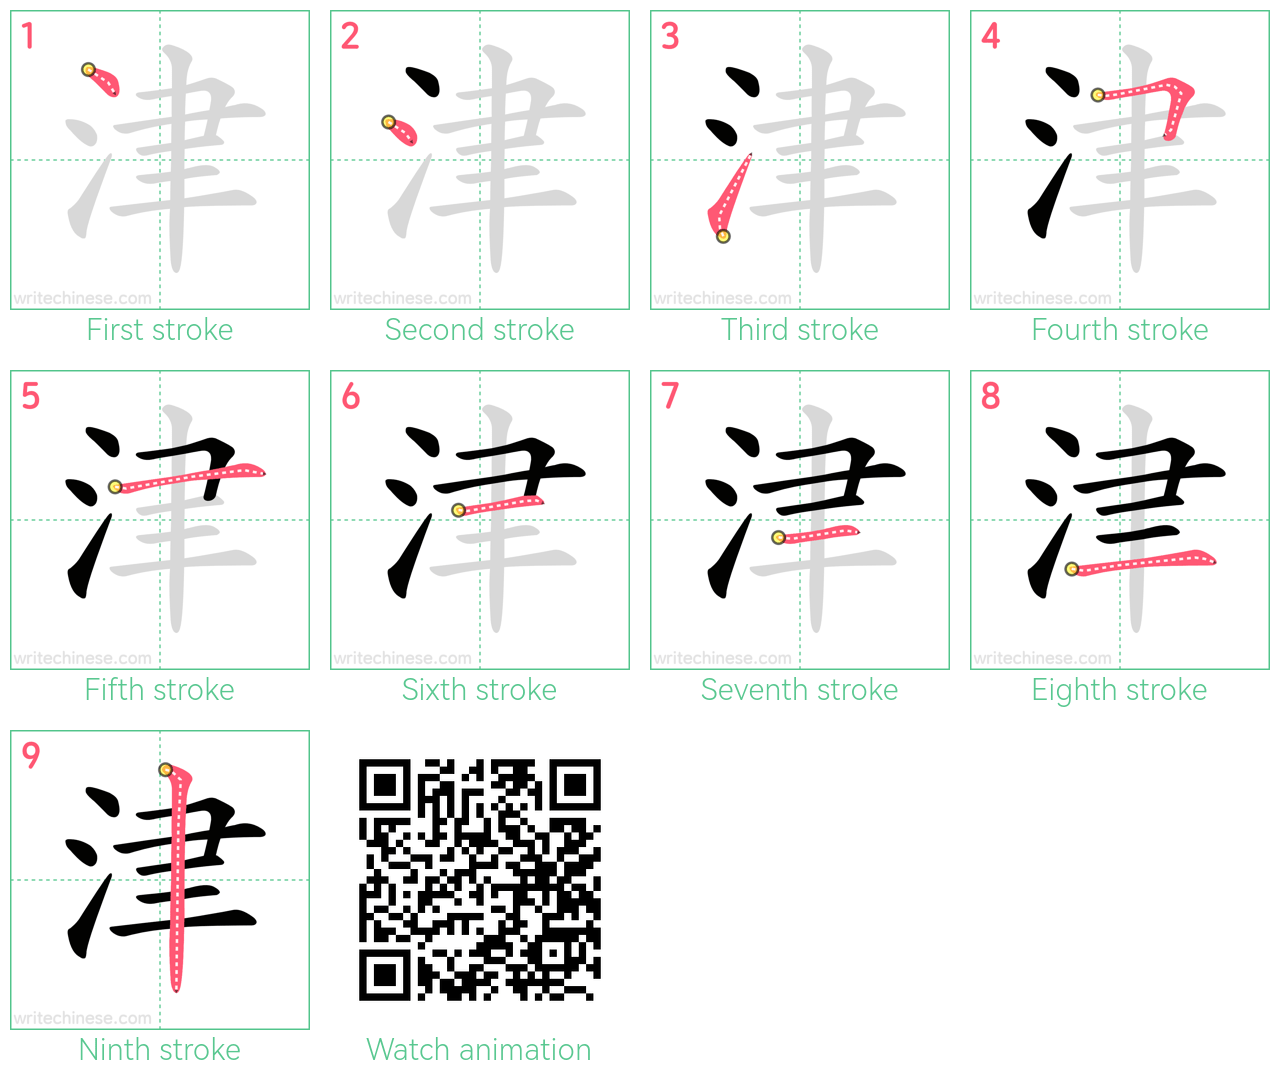 津 step-by-step stroke order diagrams